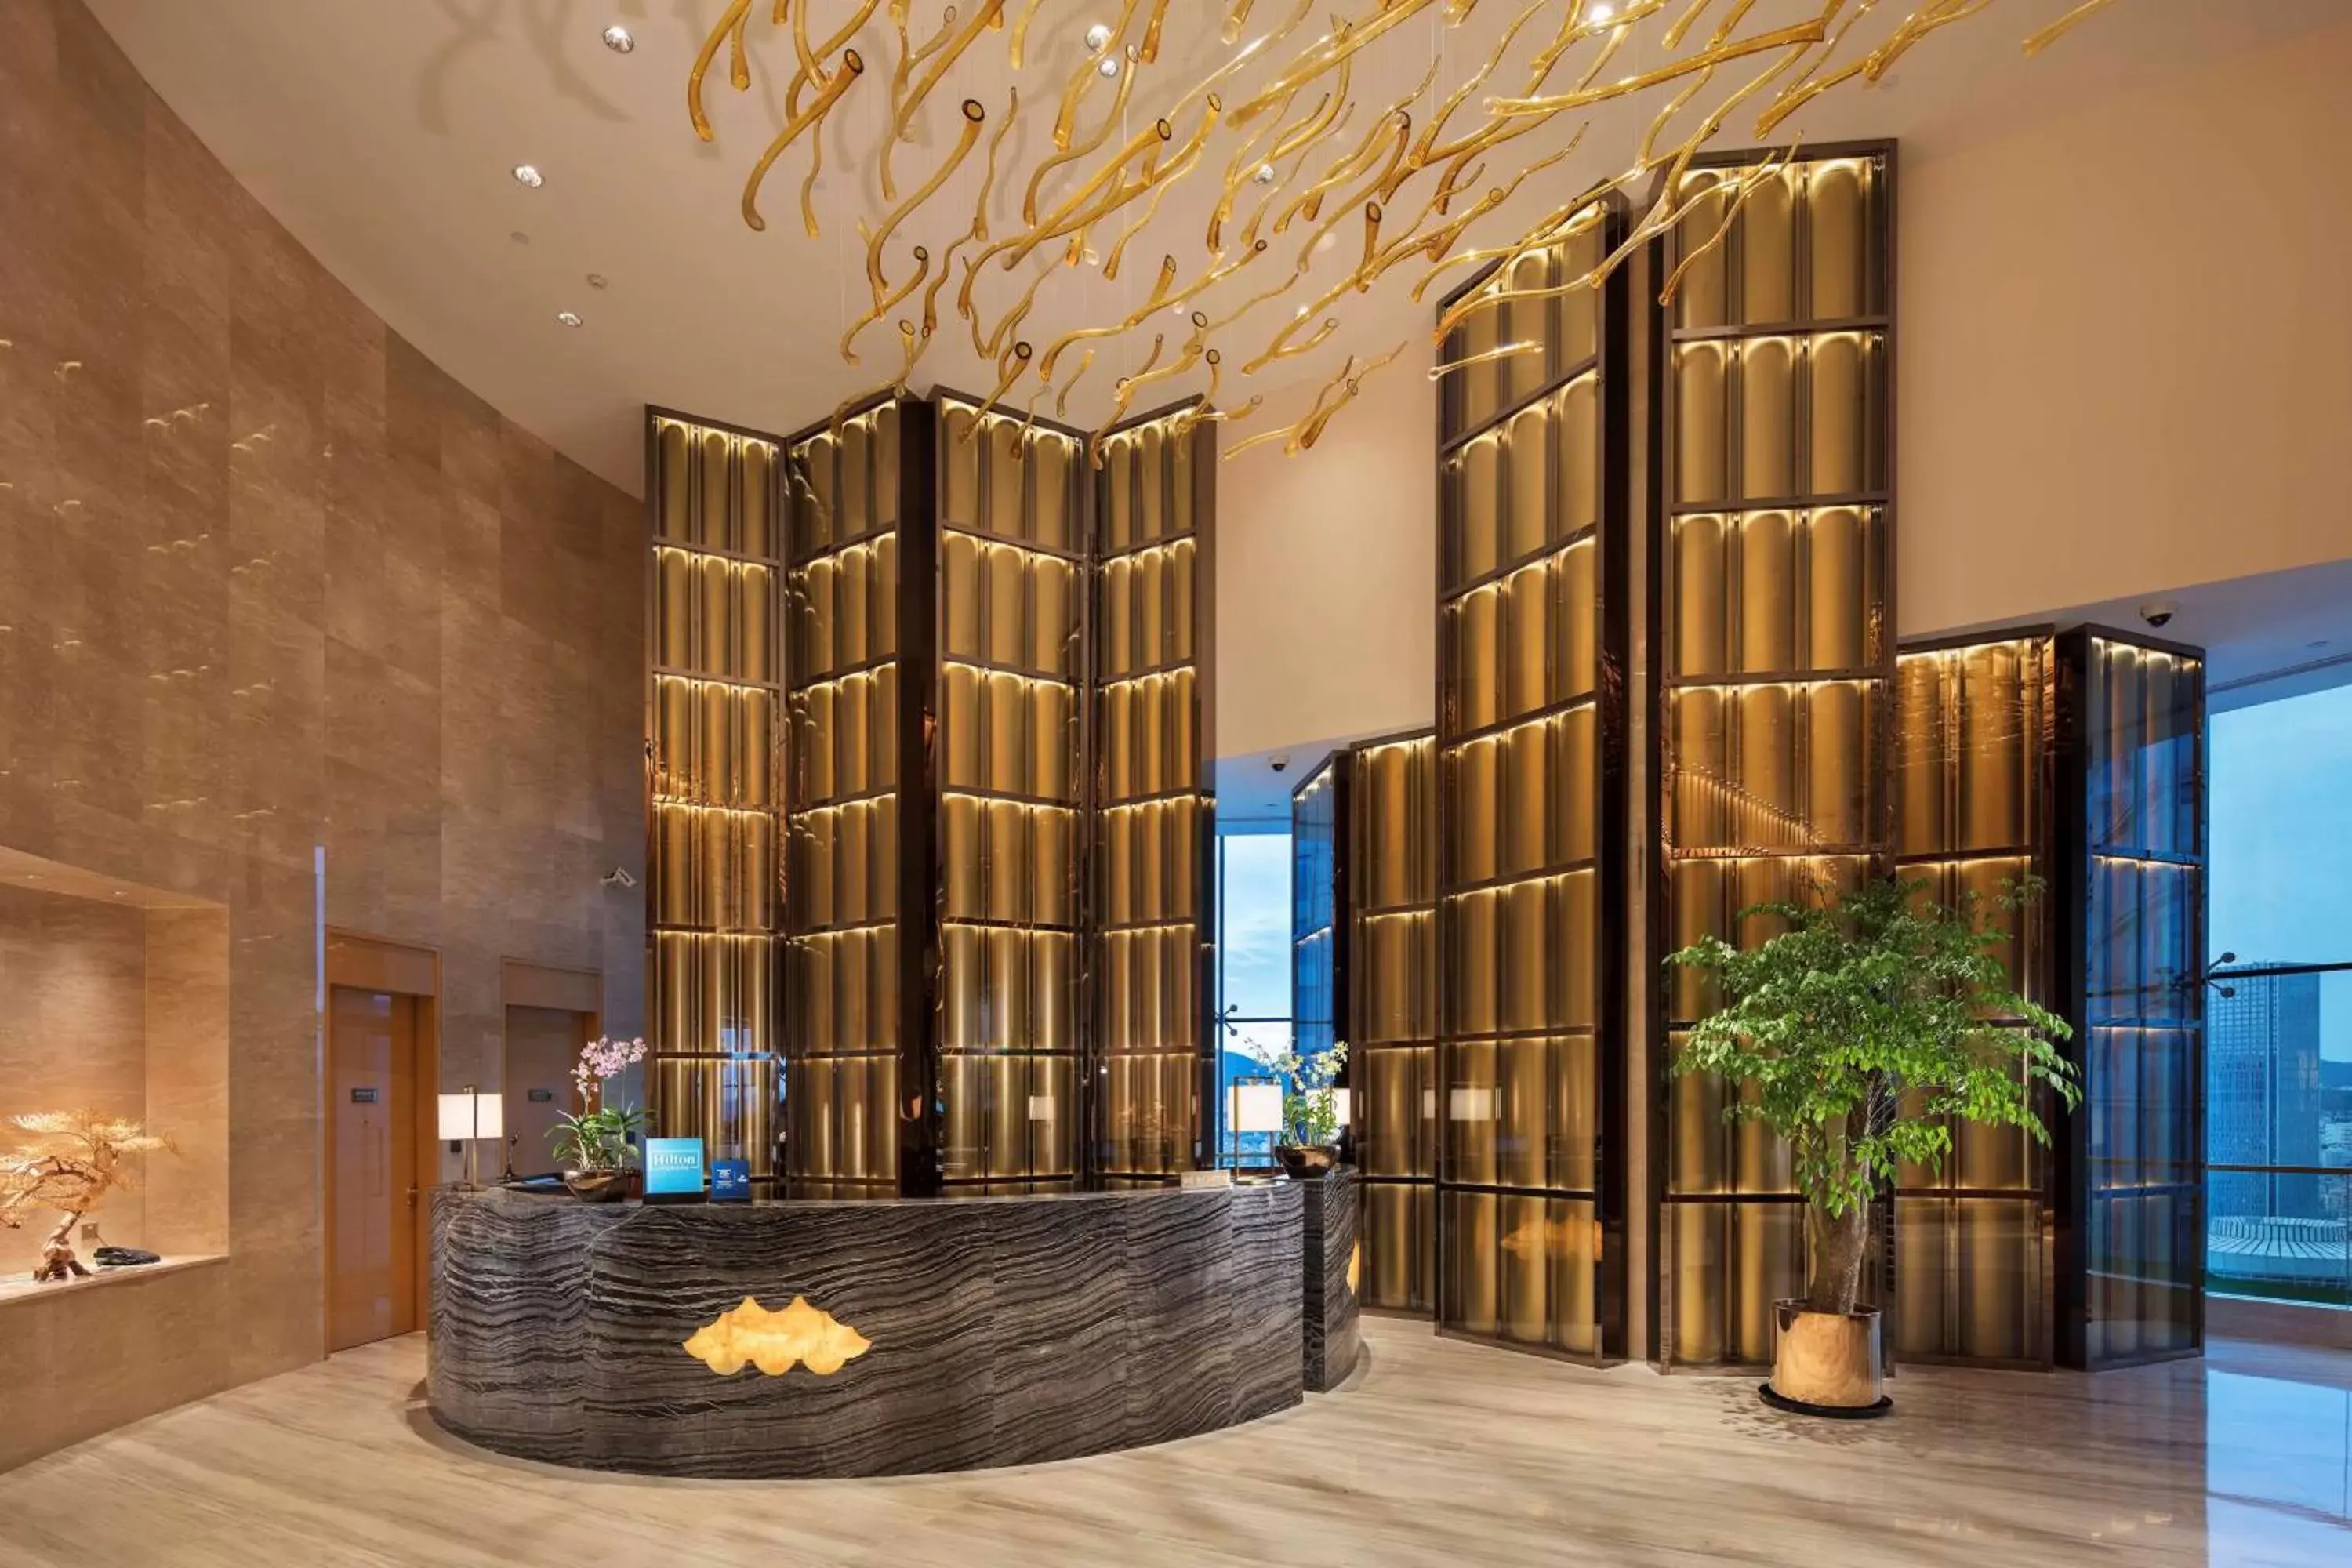 Lobby or reception, Lobby/Reception in Hilton Yantai